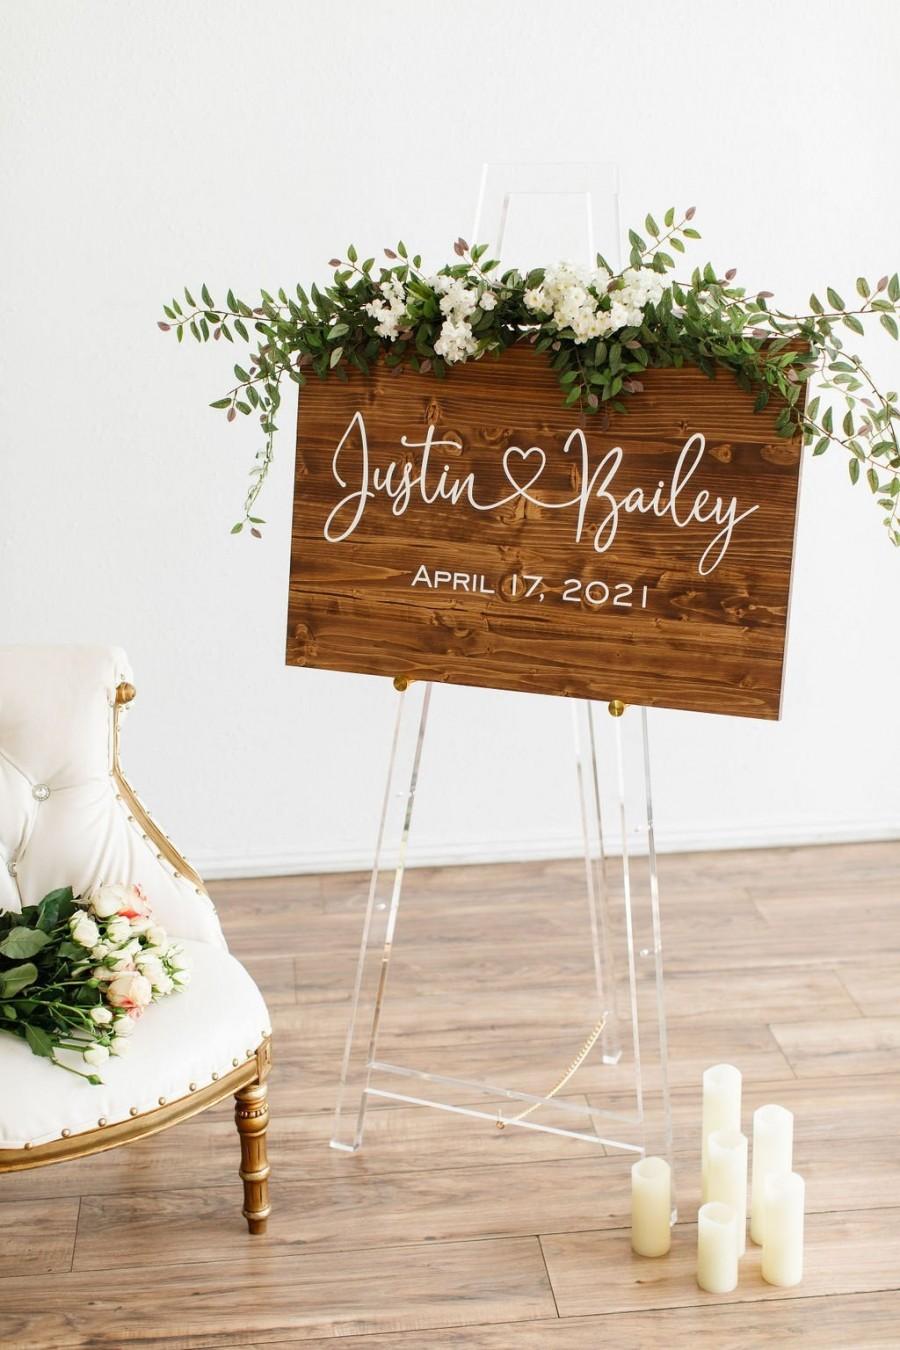 Wedding - Wedding Sign, Wedding Welcome Sign, Welcome Wedding Sign Wood, Wedding Signage, Wooden Wedding Sign,  Welcome Board, Wedding Decor